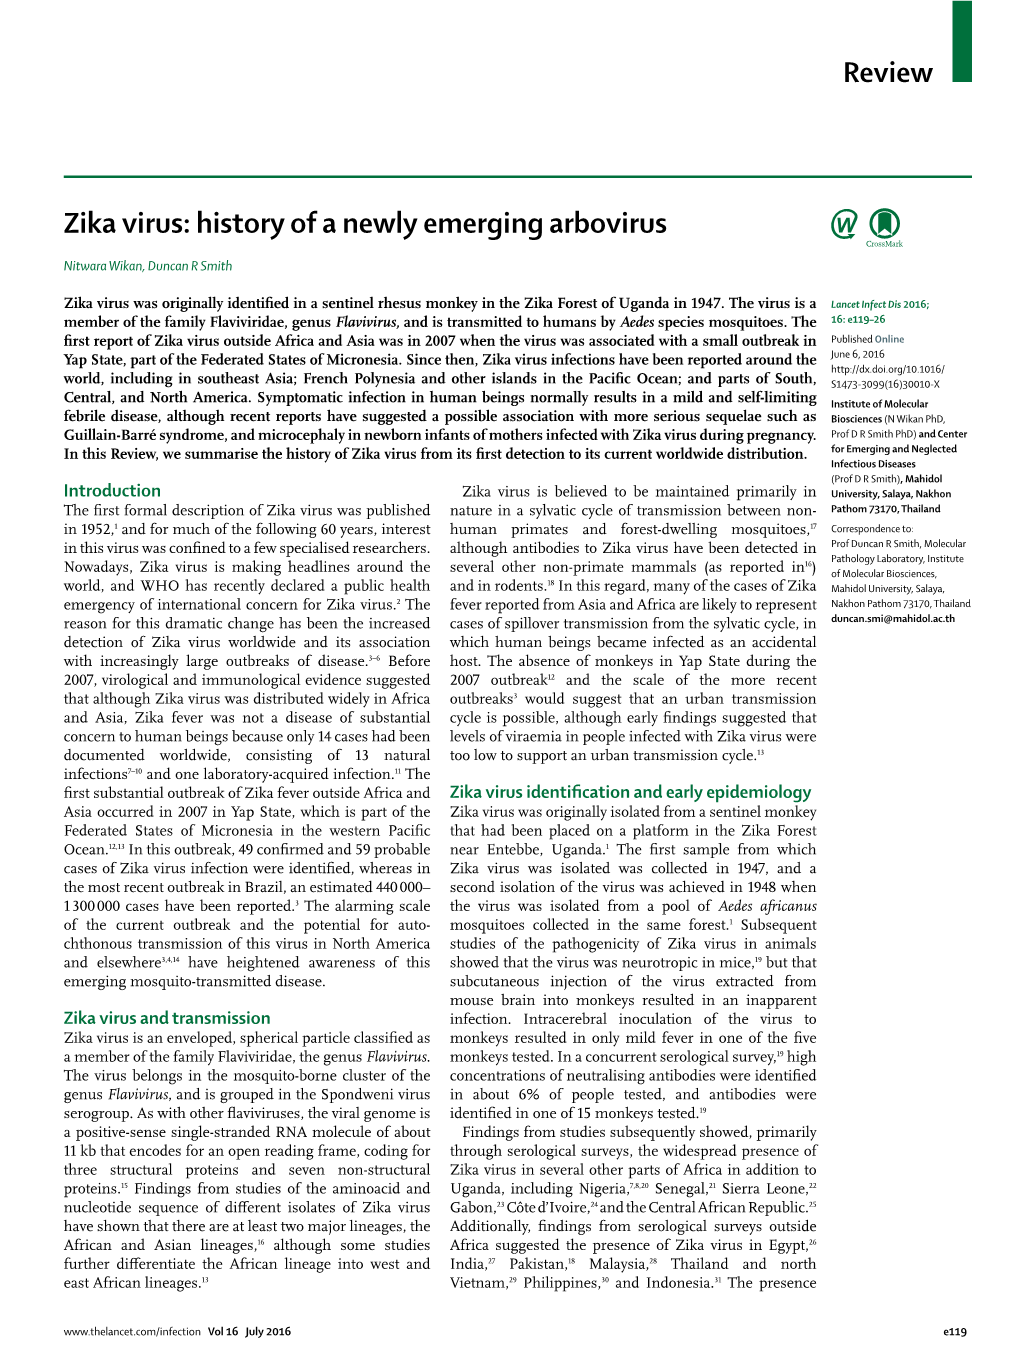 Zika Virus: History of a Newly Emerging Arbovirus